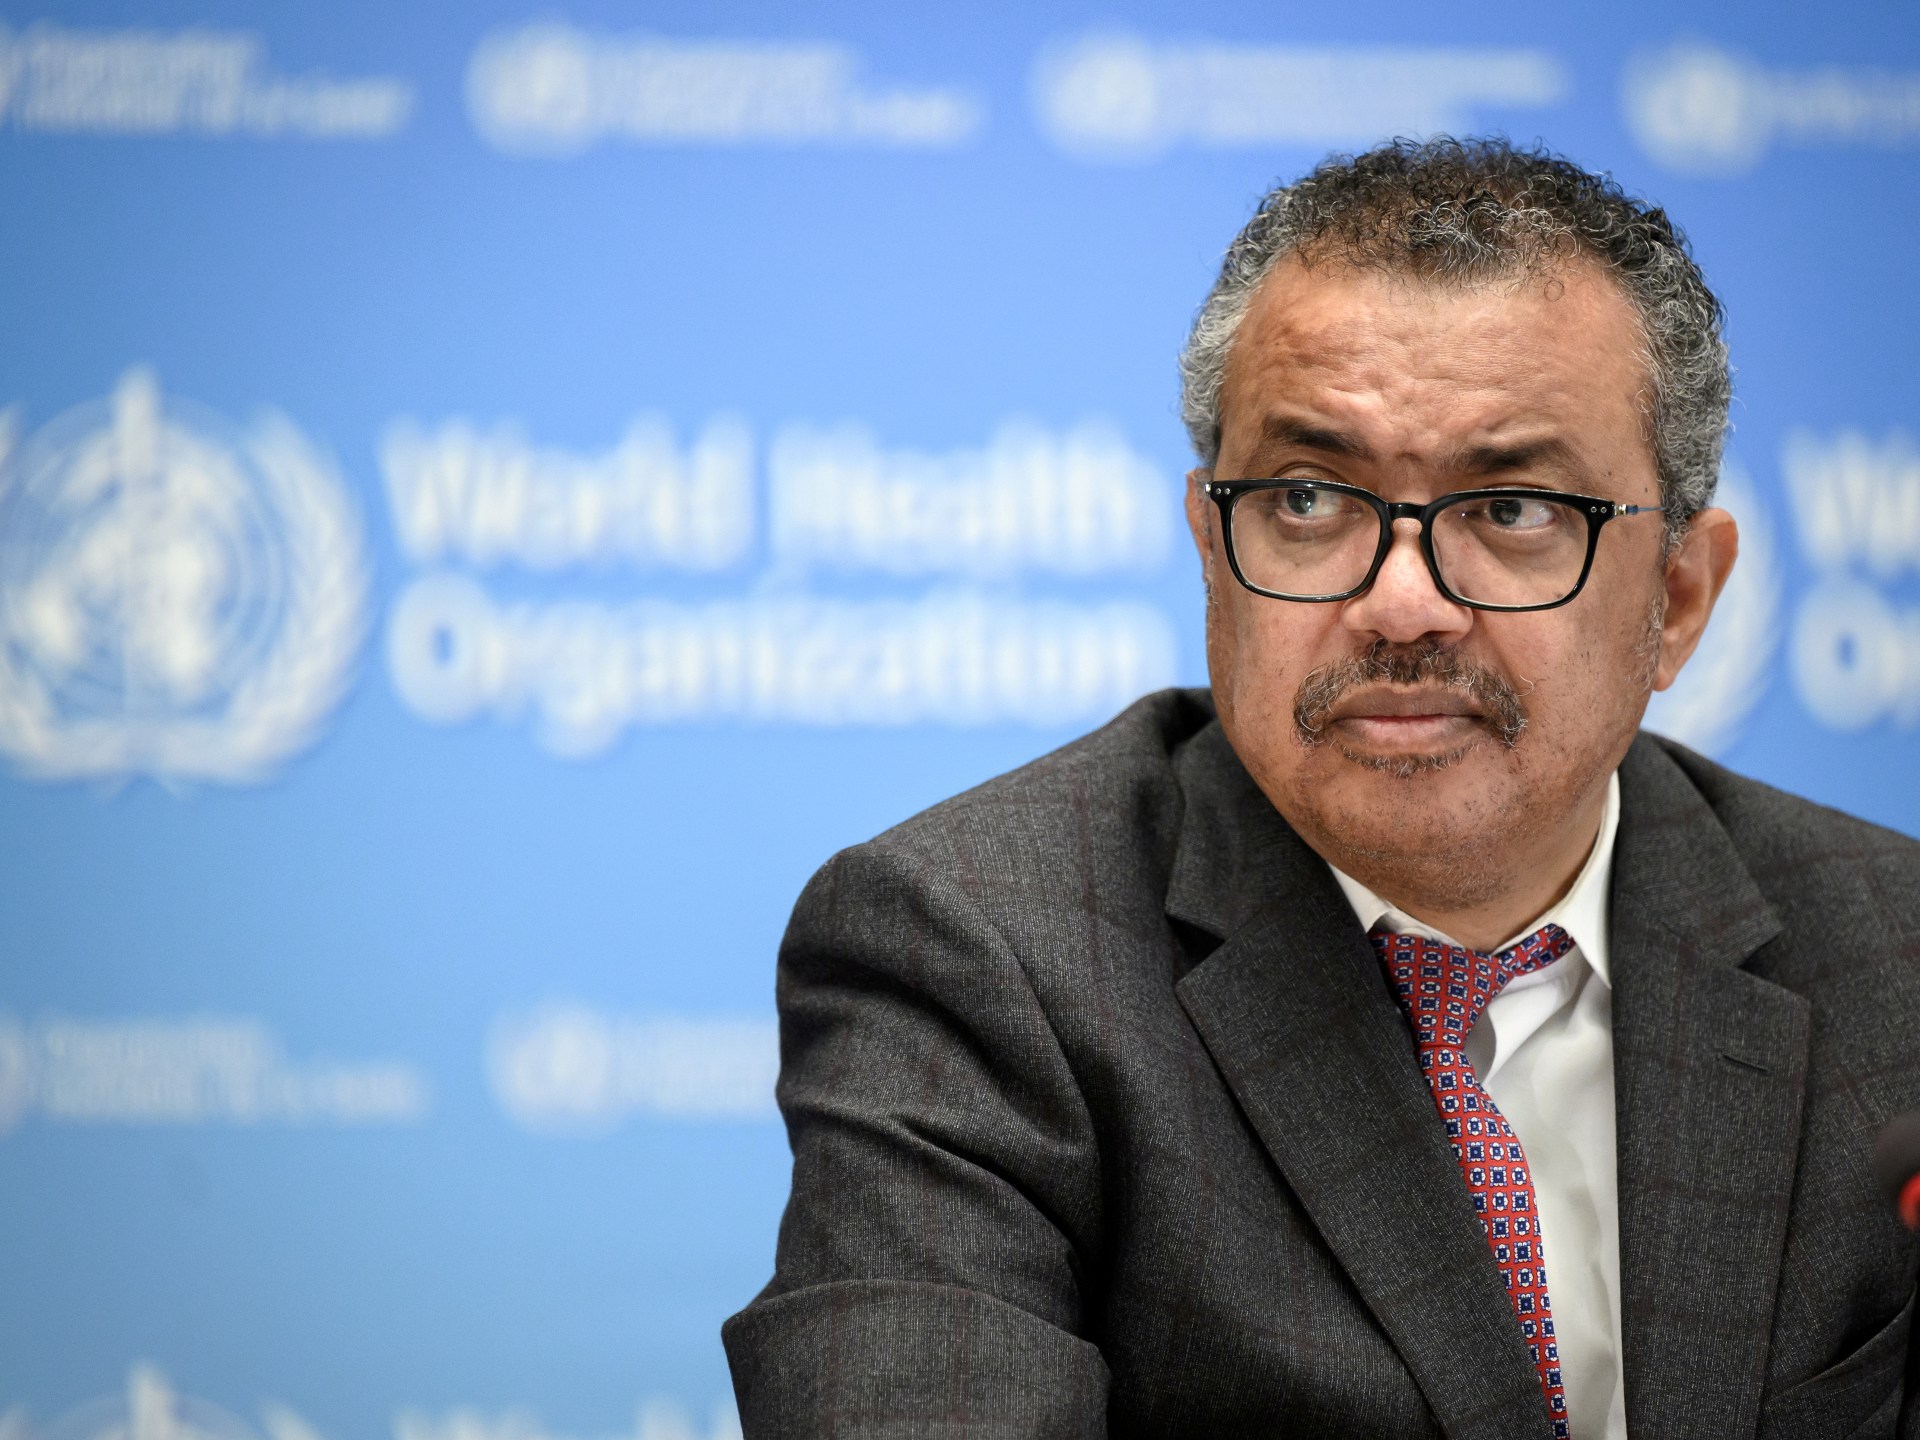 Ketua WHO meminta China untuk berbagi informasi tentang asal usul COVID |  Berita pandemi Coronavirus